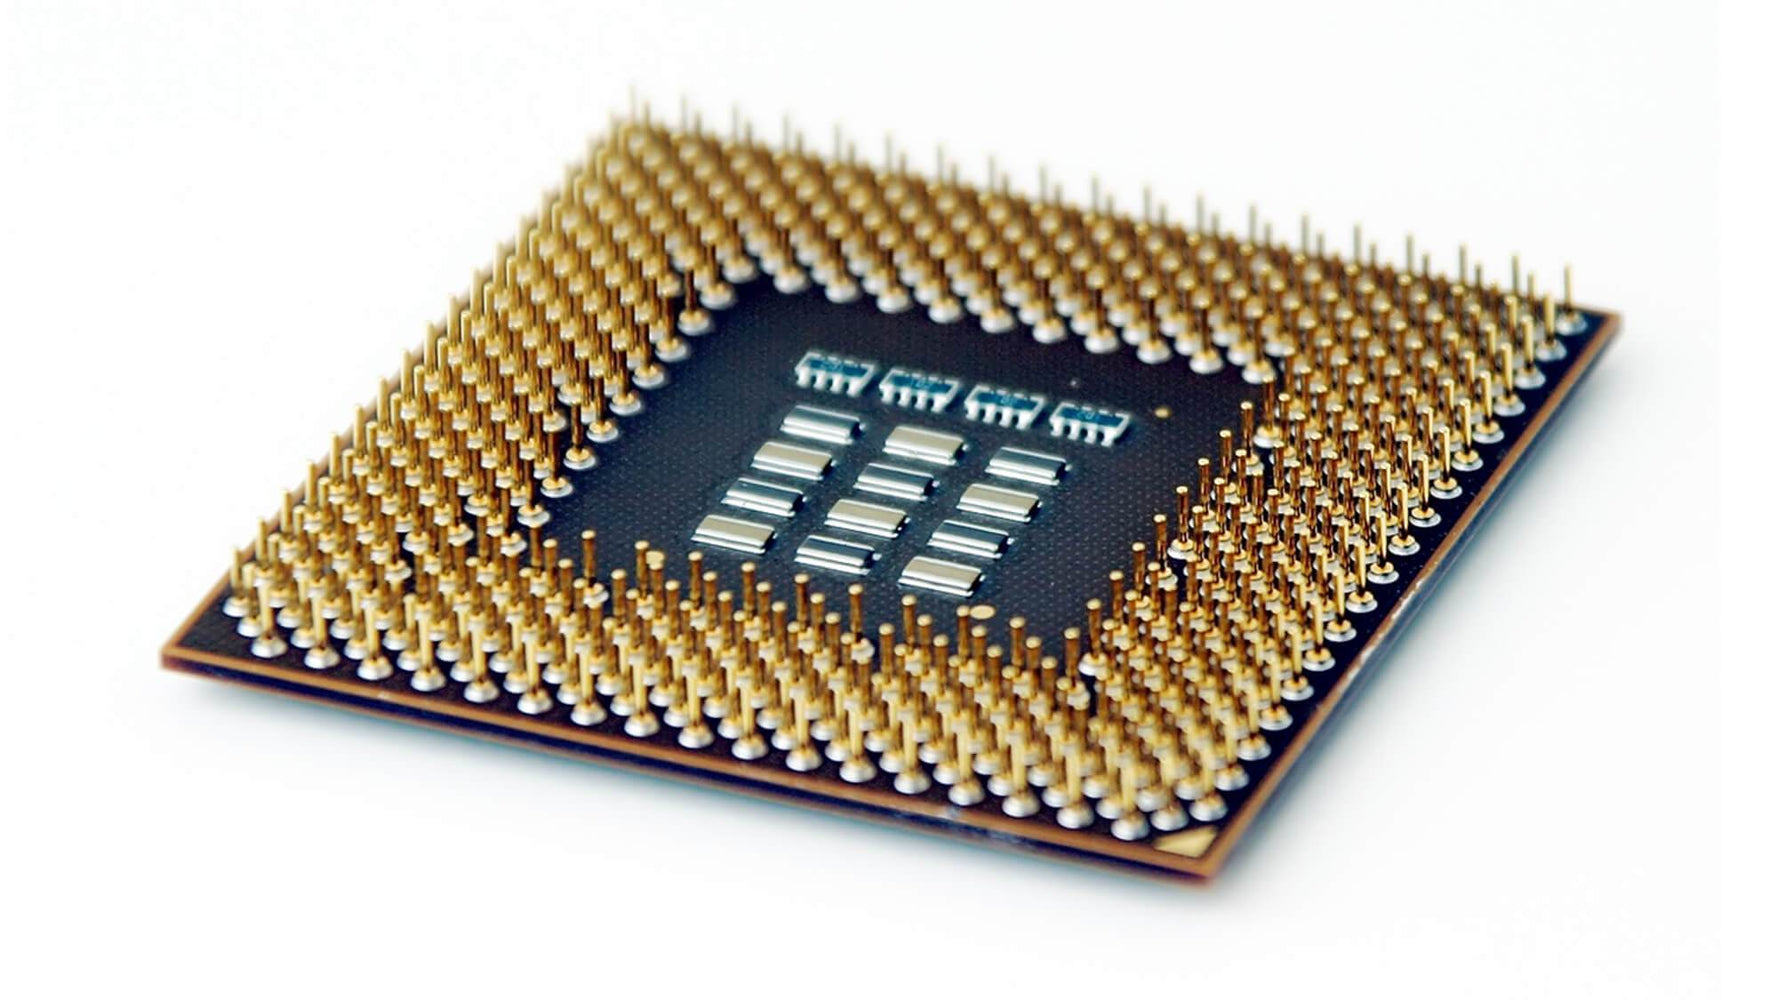 XM4185 - Dell 1.86GHz 533MHz FSB 2MB L2 Cache Socket H-PBGA479 / PPGA478 Intel Pentium M 750 1-Core Processor